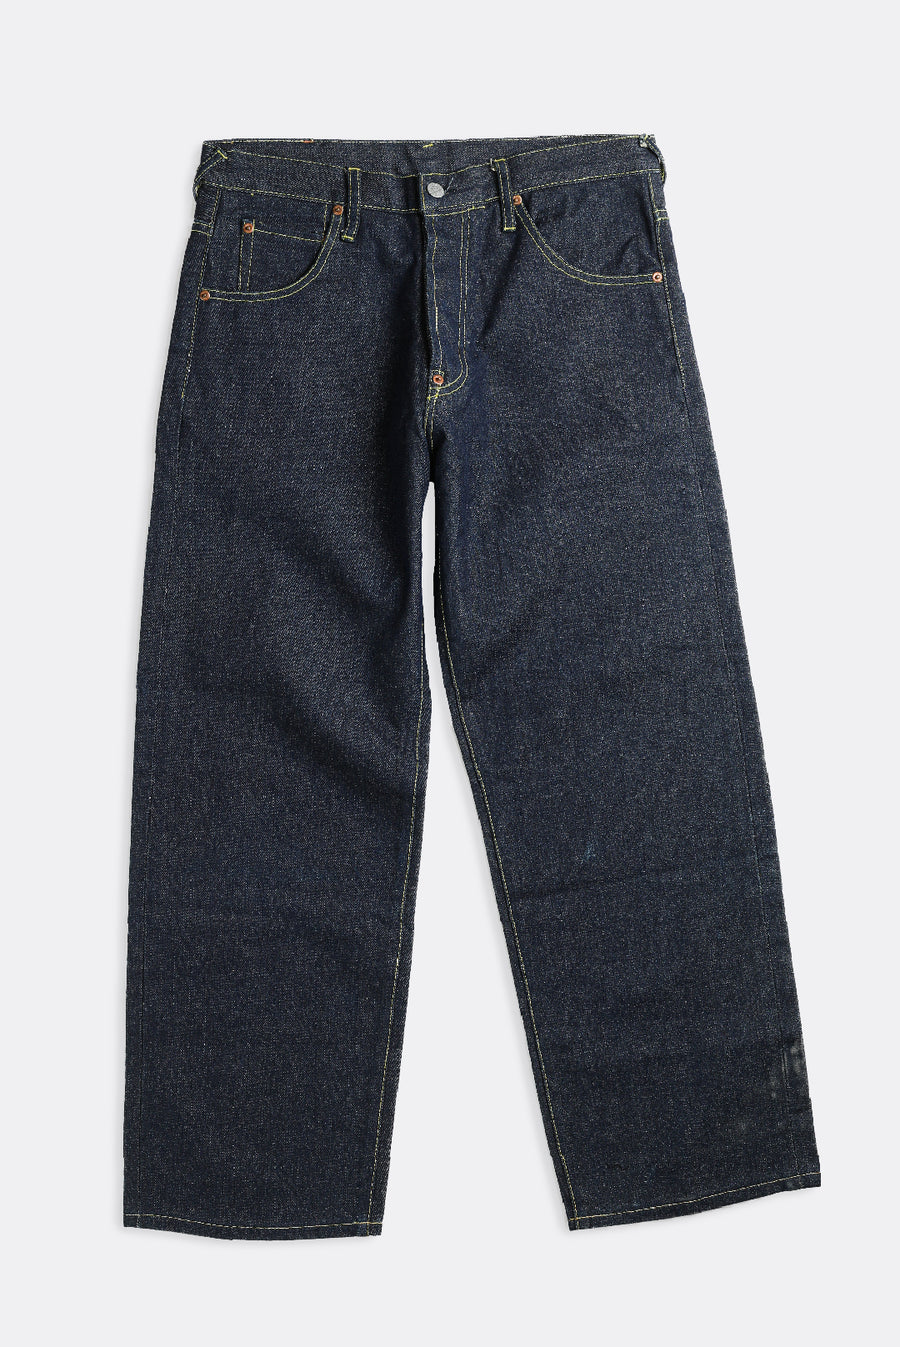 Vintage EVISU Denim Pants - W34